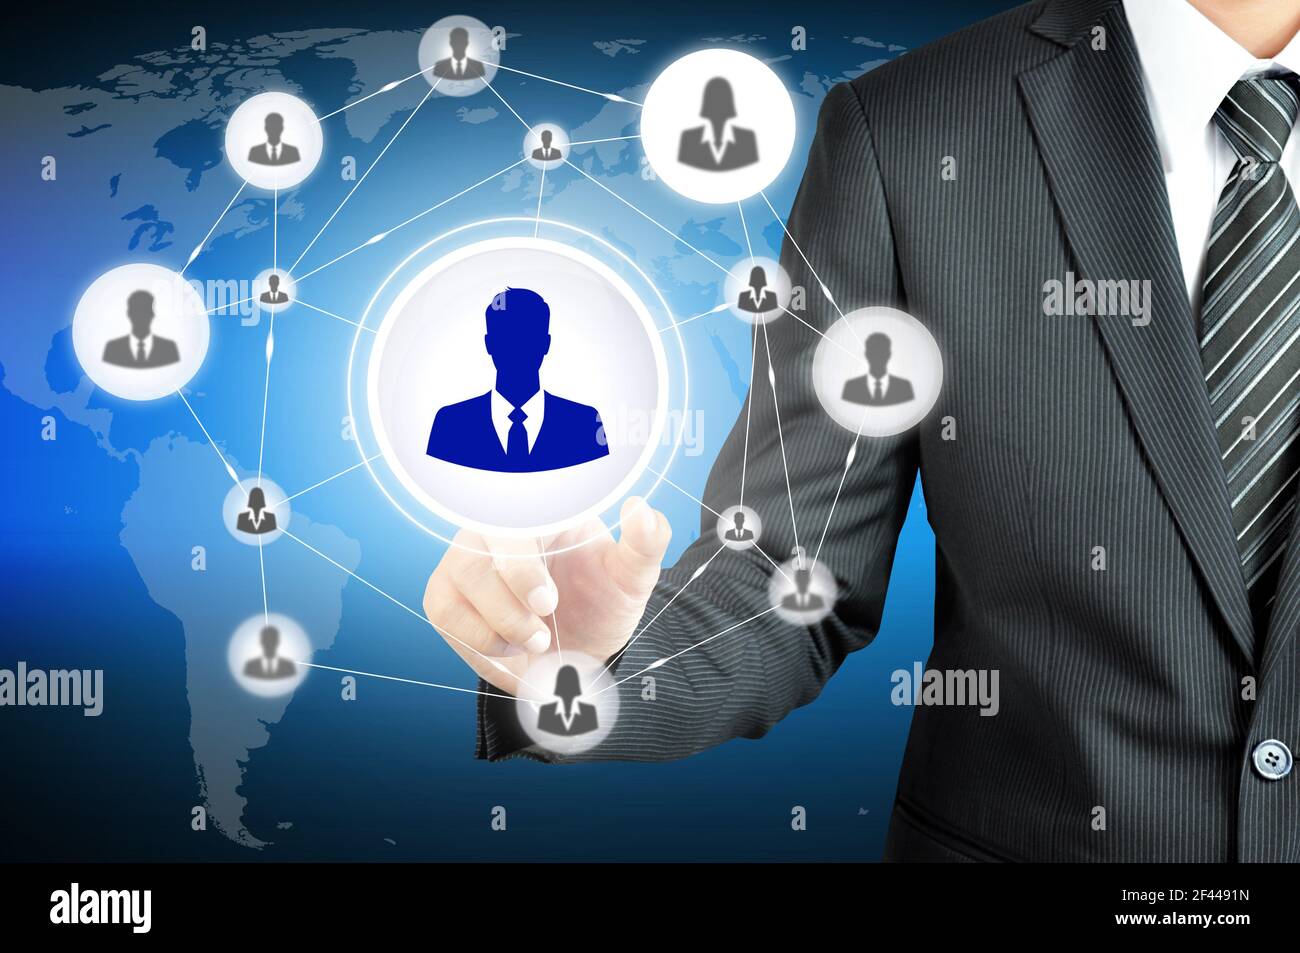 Hand zeigt auf Geschäftsmann Symbol in der Mitte, die miteinander als Netzwerk verbunden - HR, HRM, MLM, Teamwork & Leadership-Konzept Stockfoto